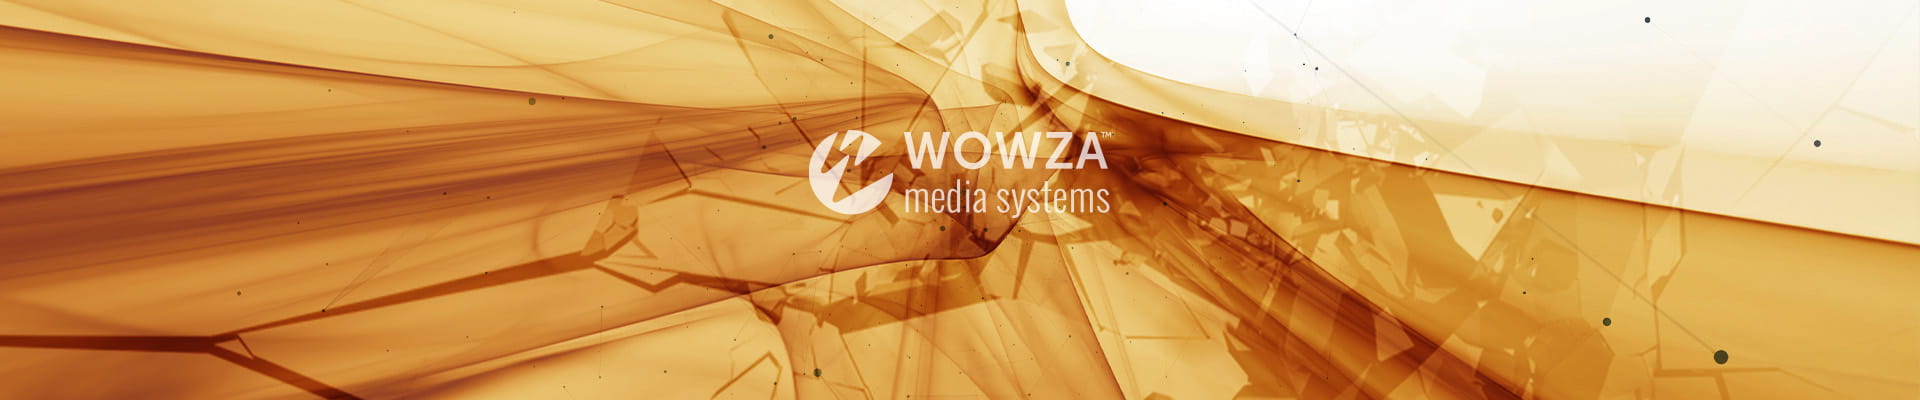 Wowza Streaming Engine 動作環境